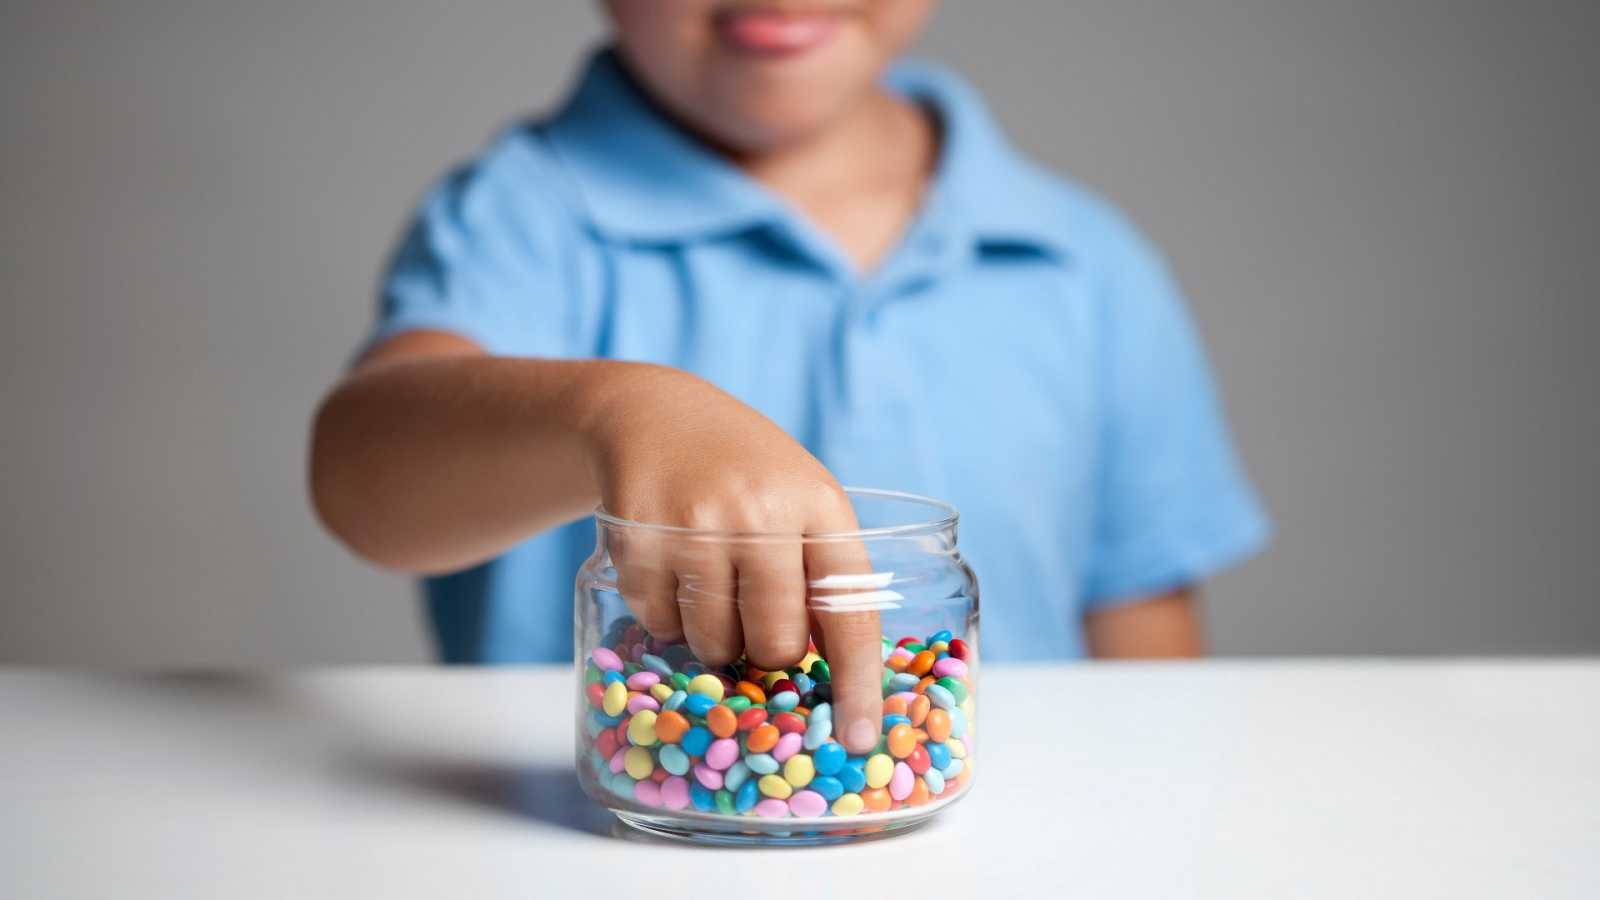 Mis hijos comen muchos dulces, ¿Cómo evito que tengan problemas en los dientes?